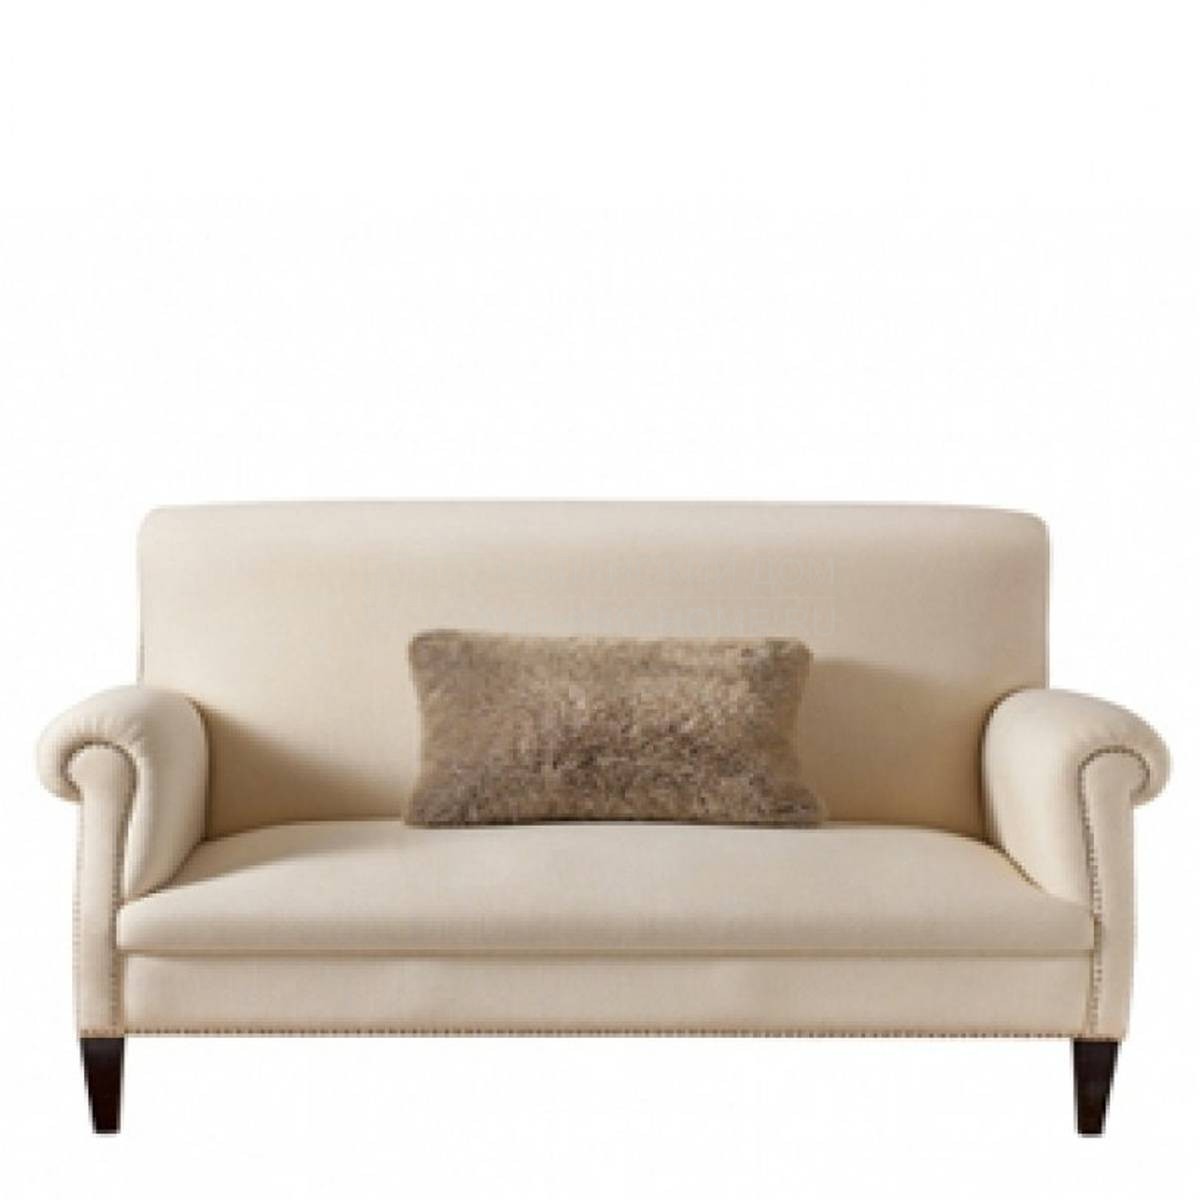 Прямой диван Begonia two seater sofa из Италии фабрики MARIONI